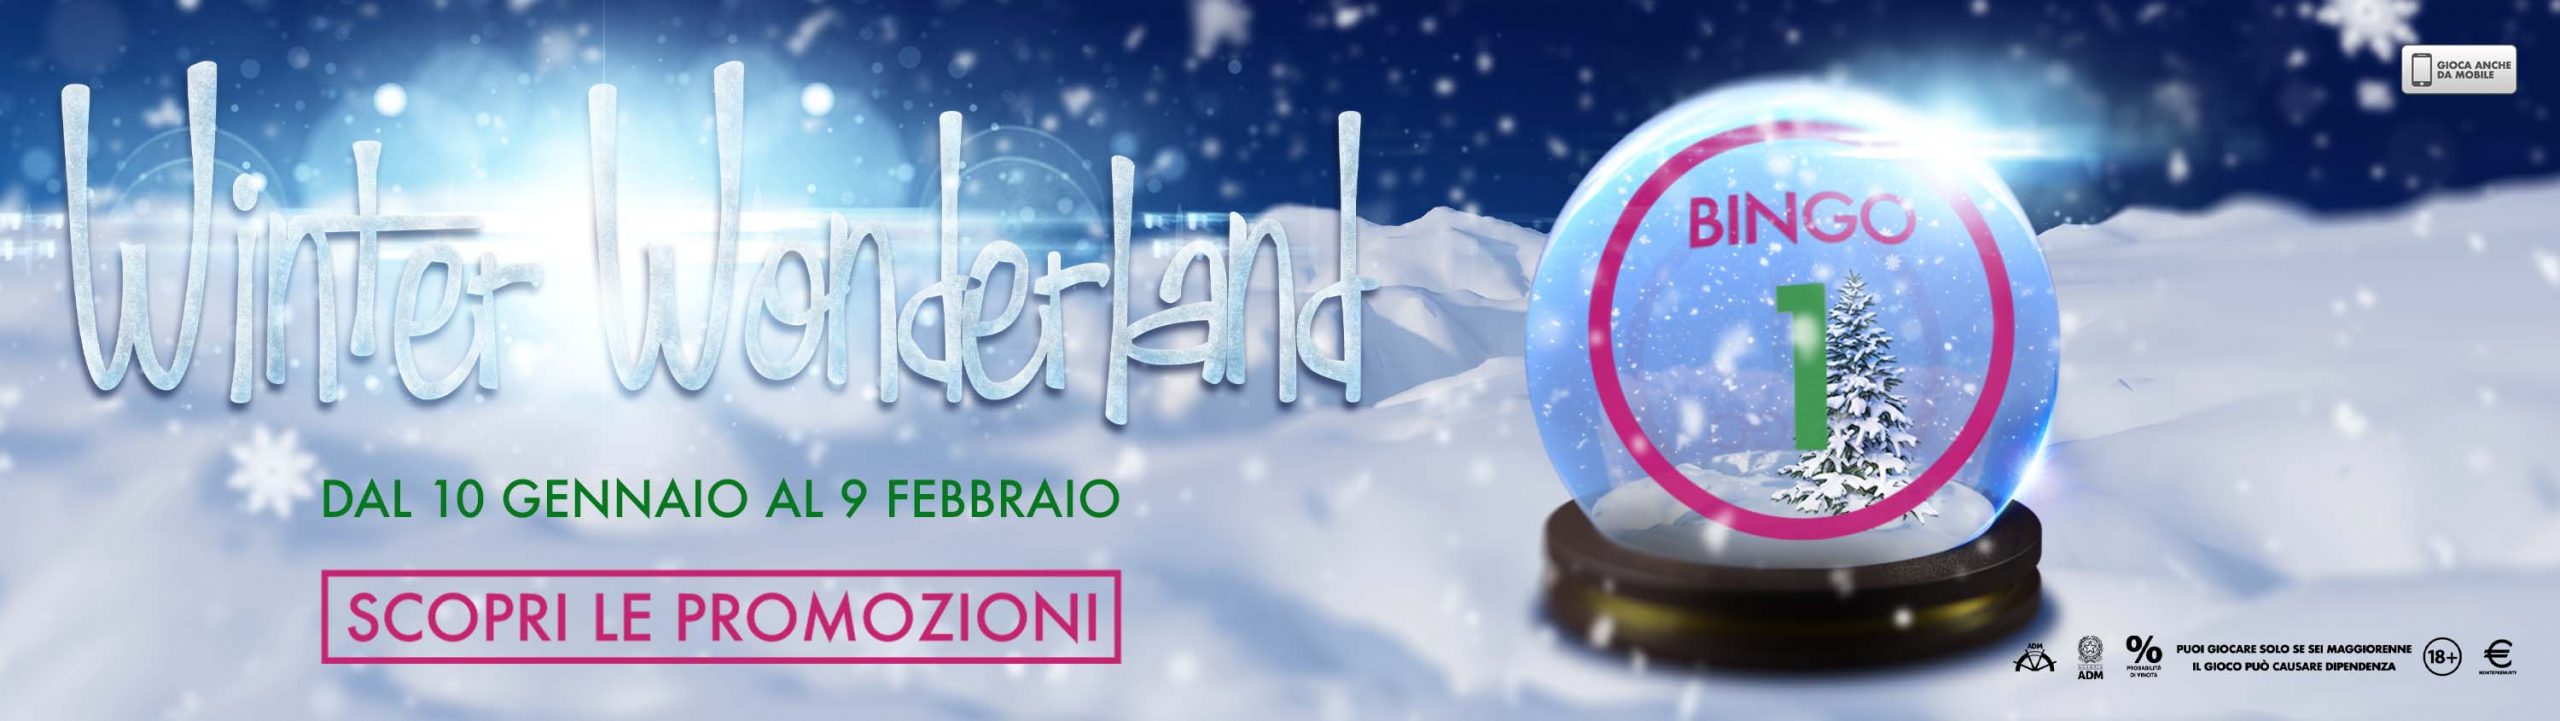 Winter Wonderland, nella lobby del Bingo una nuova promo riscalda l’inverno